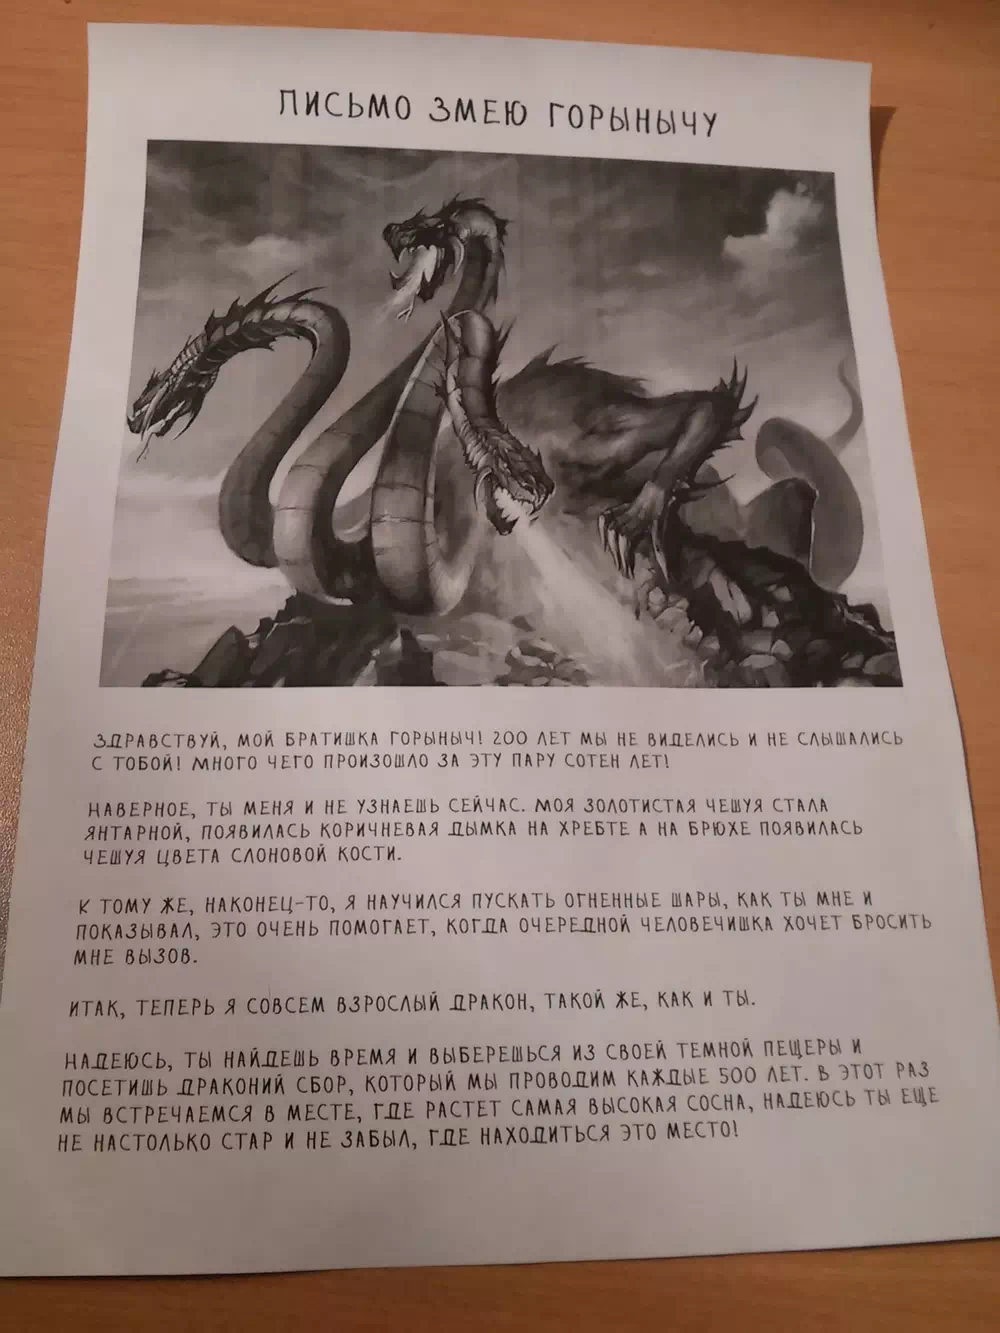 Вот и письмо Змею Горынычу!